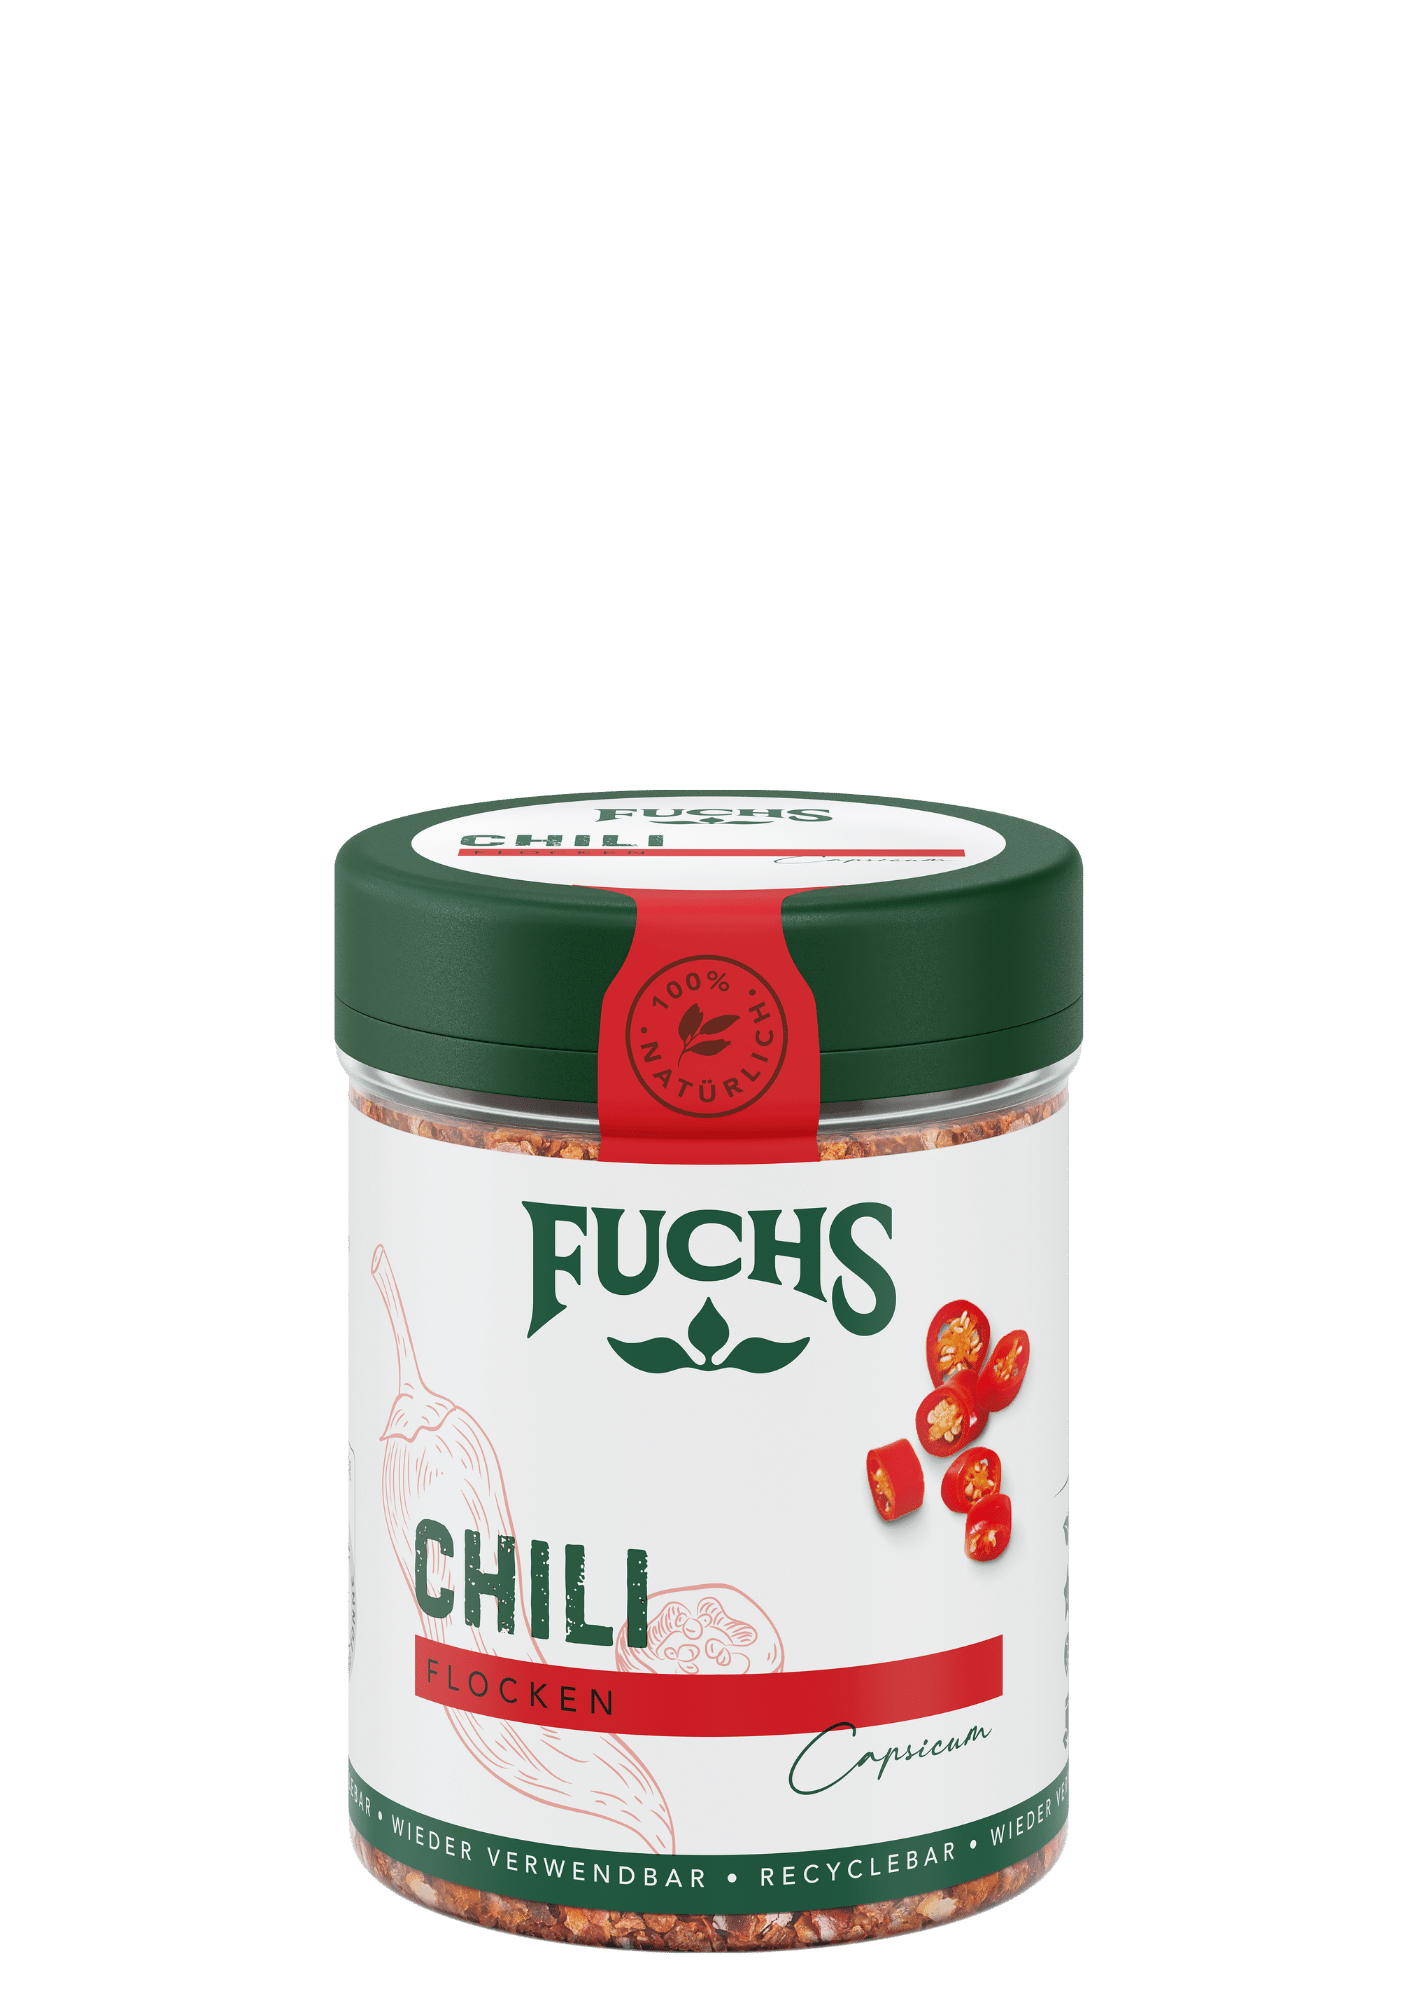 Chili Flocken